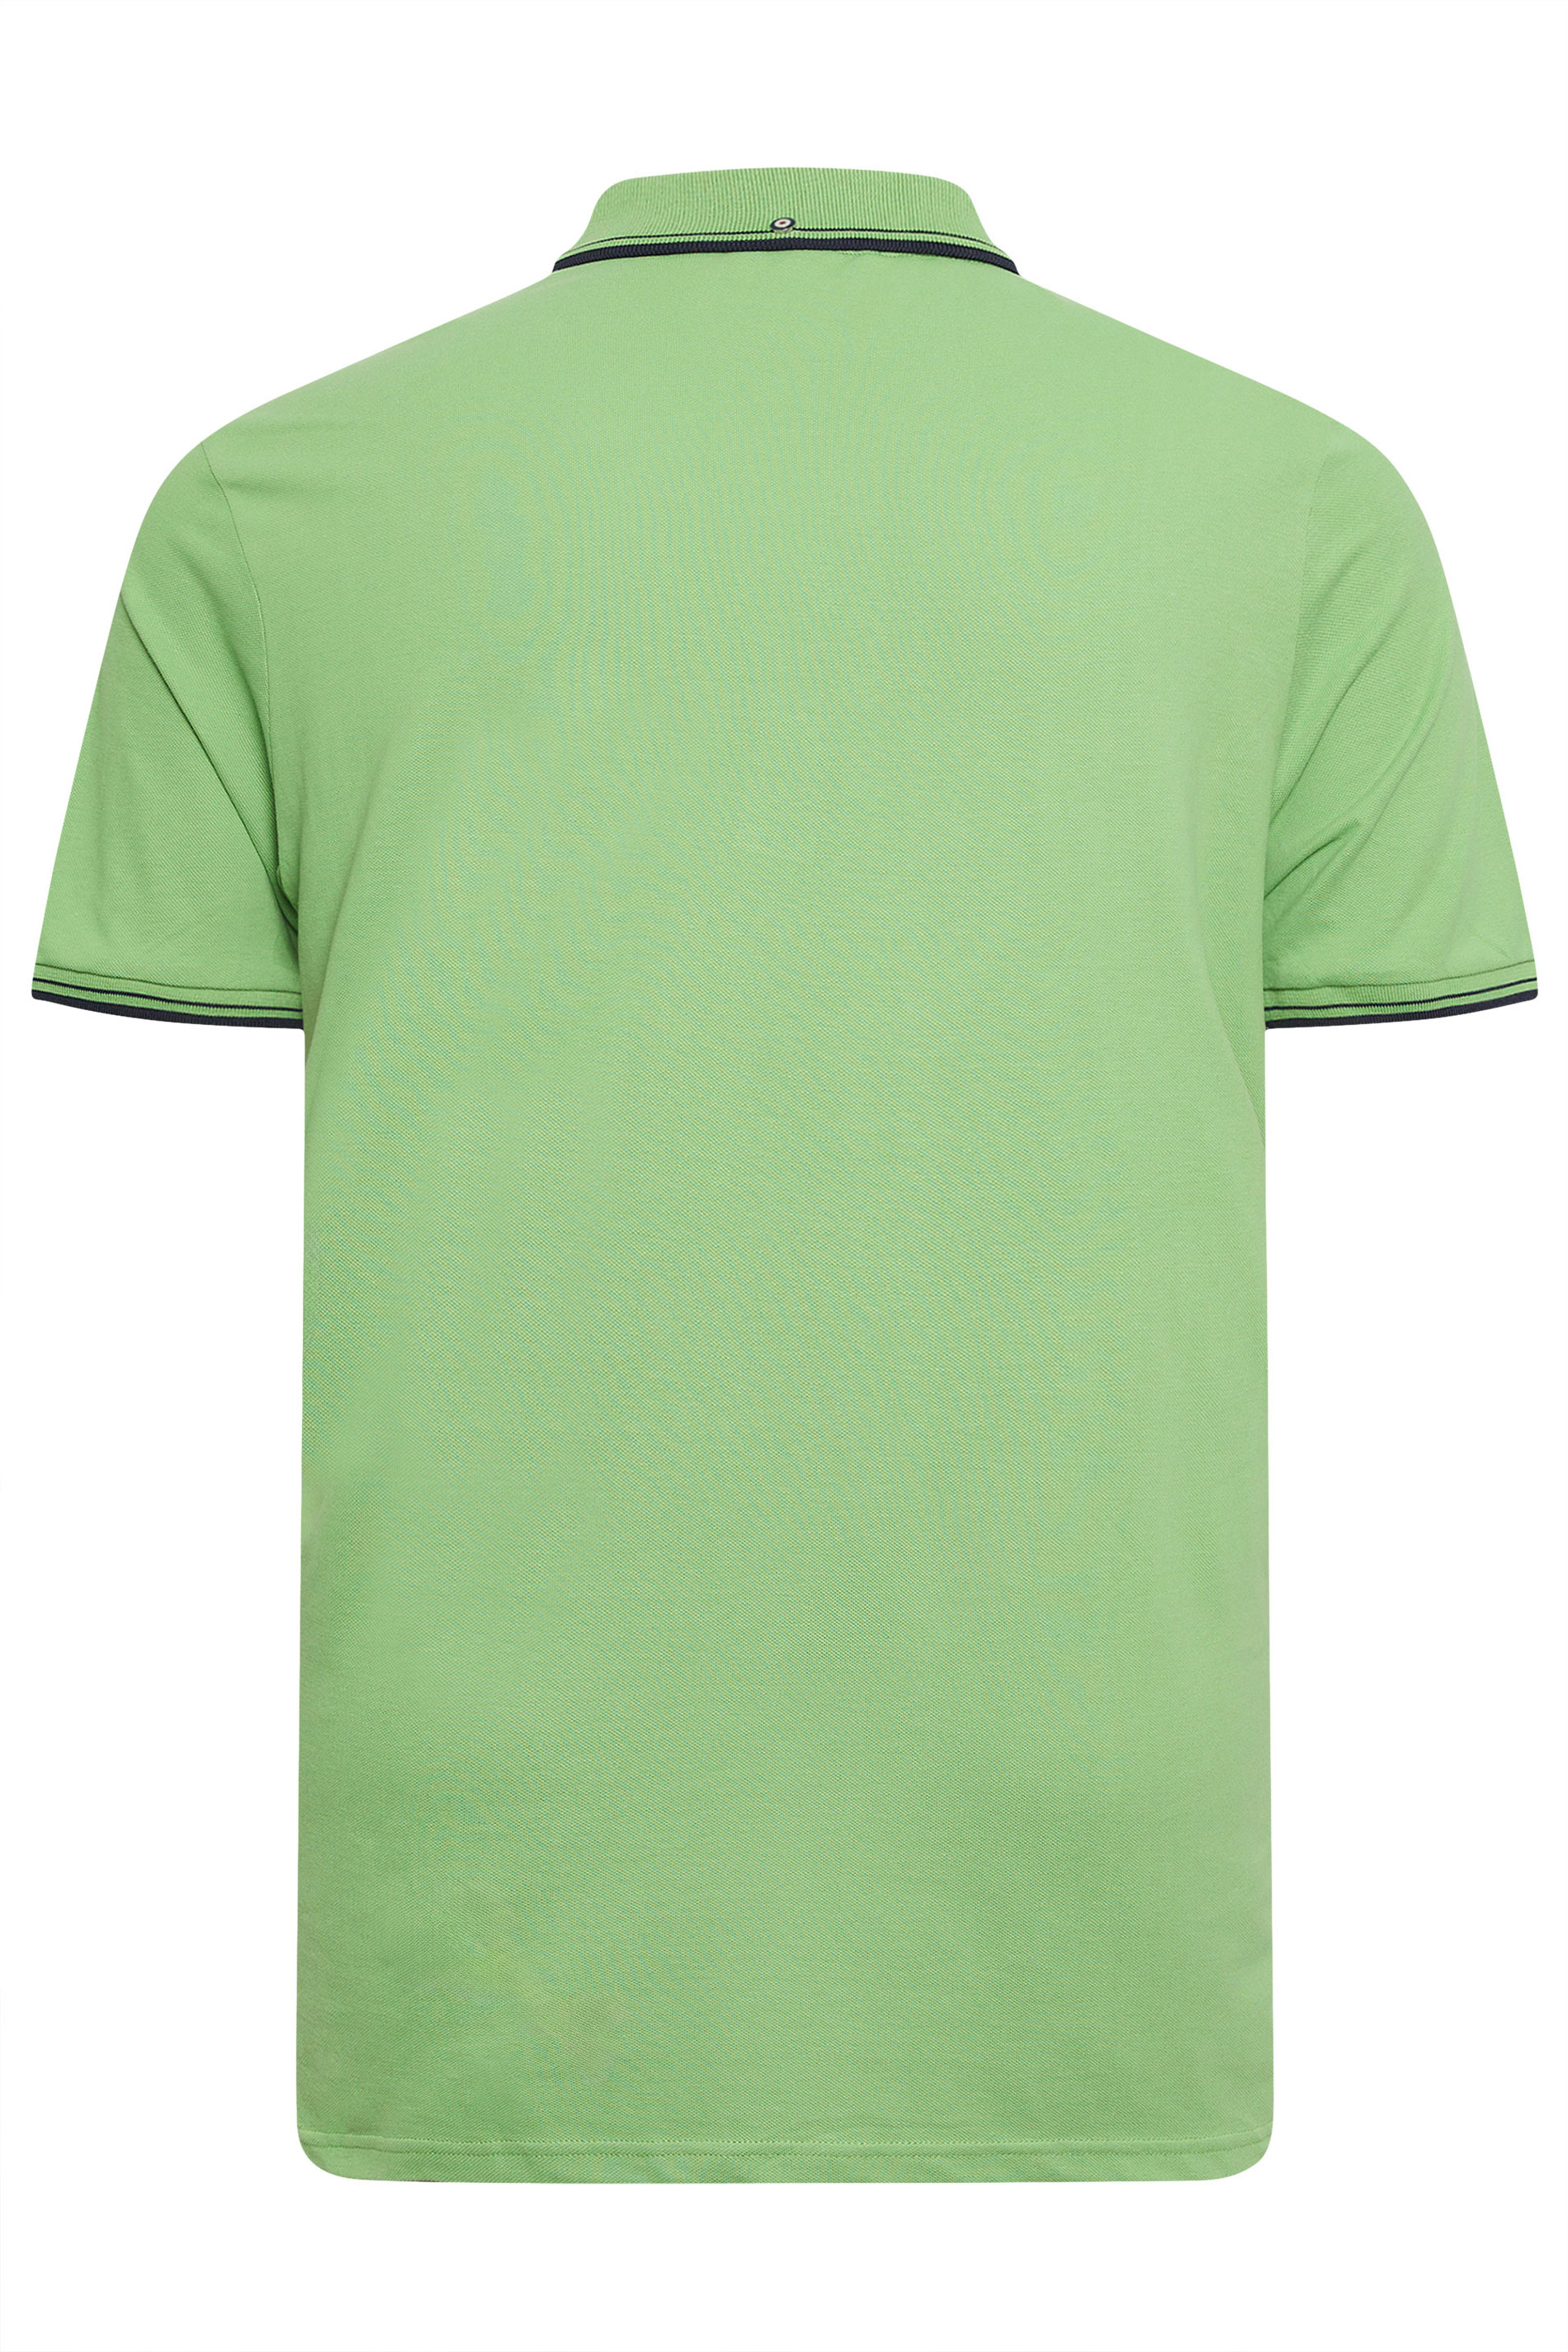 BEN SHERMAN Big & Tall Green Tipped Polo Shirt | BadRhino 3